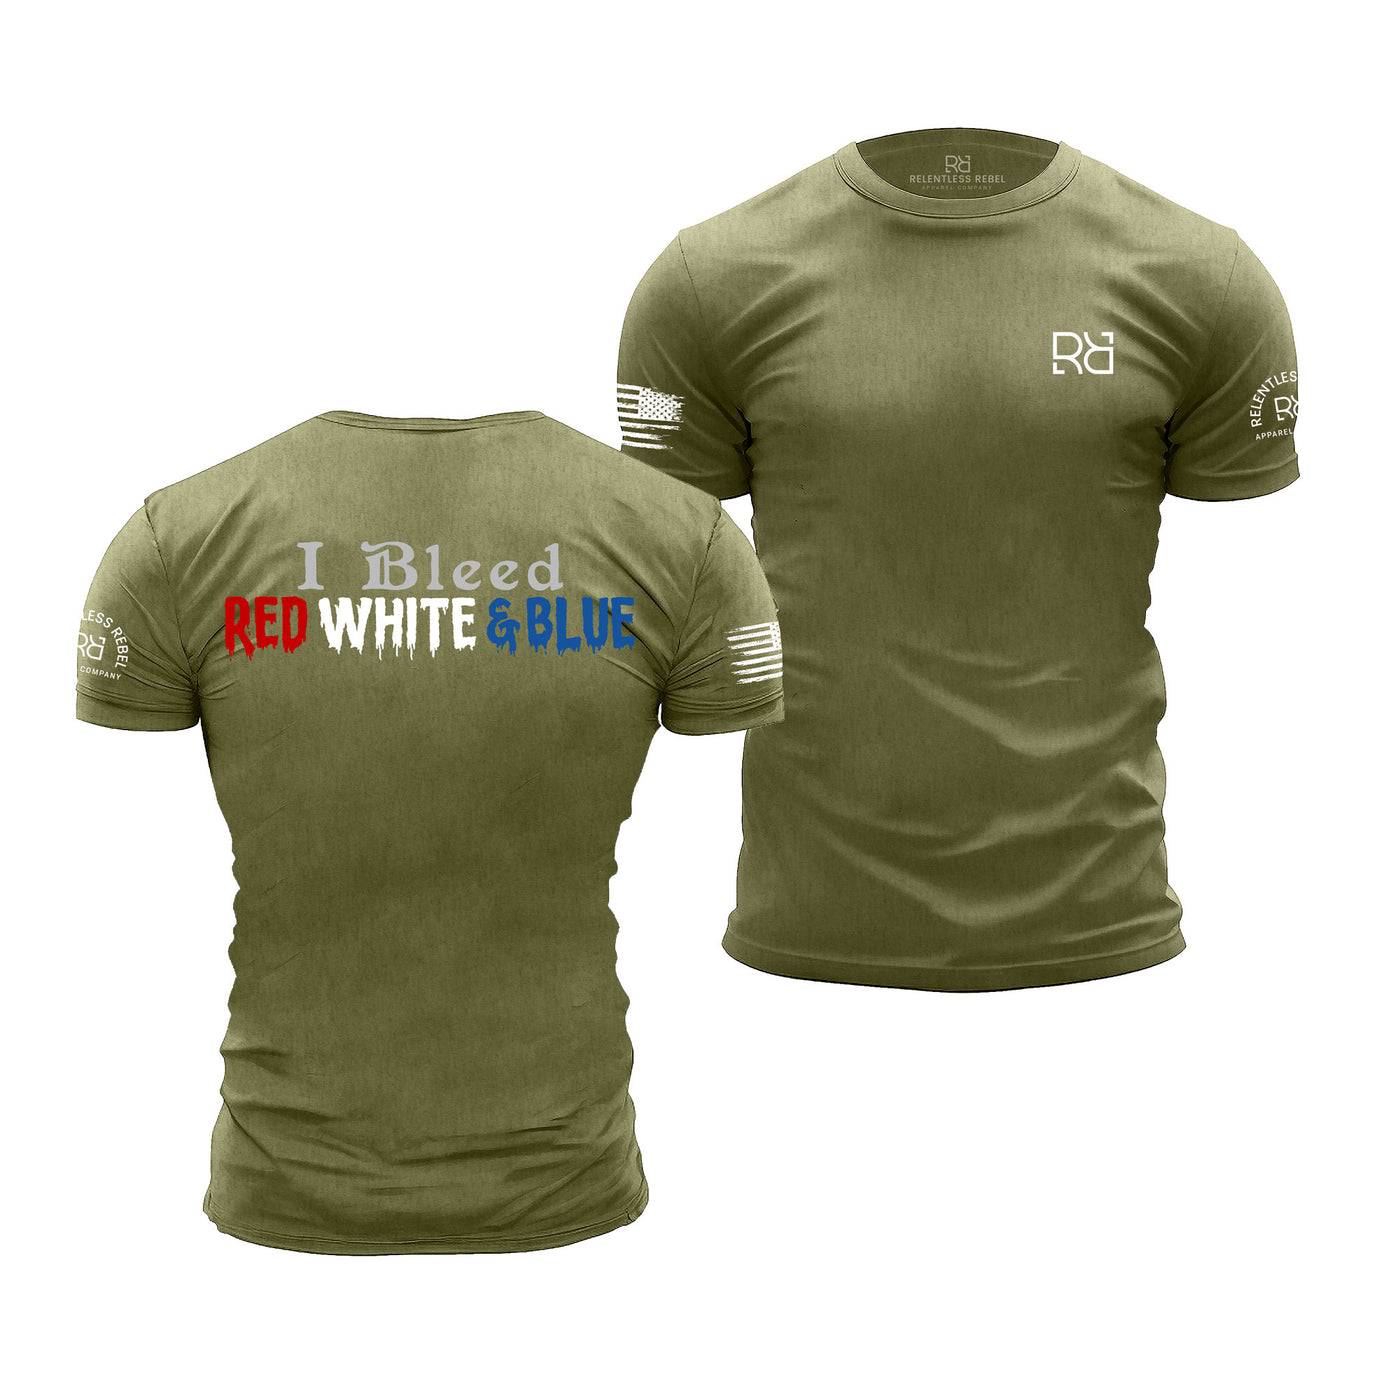 Military Green Men's I Bleed Red White & Blue Back Design Tee